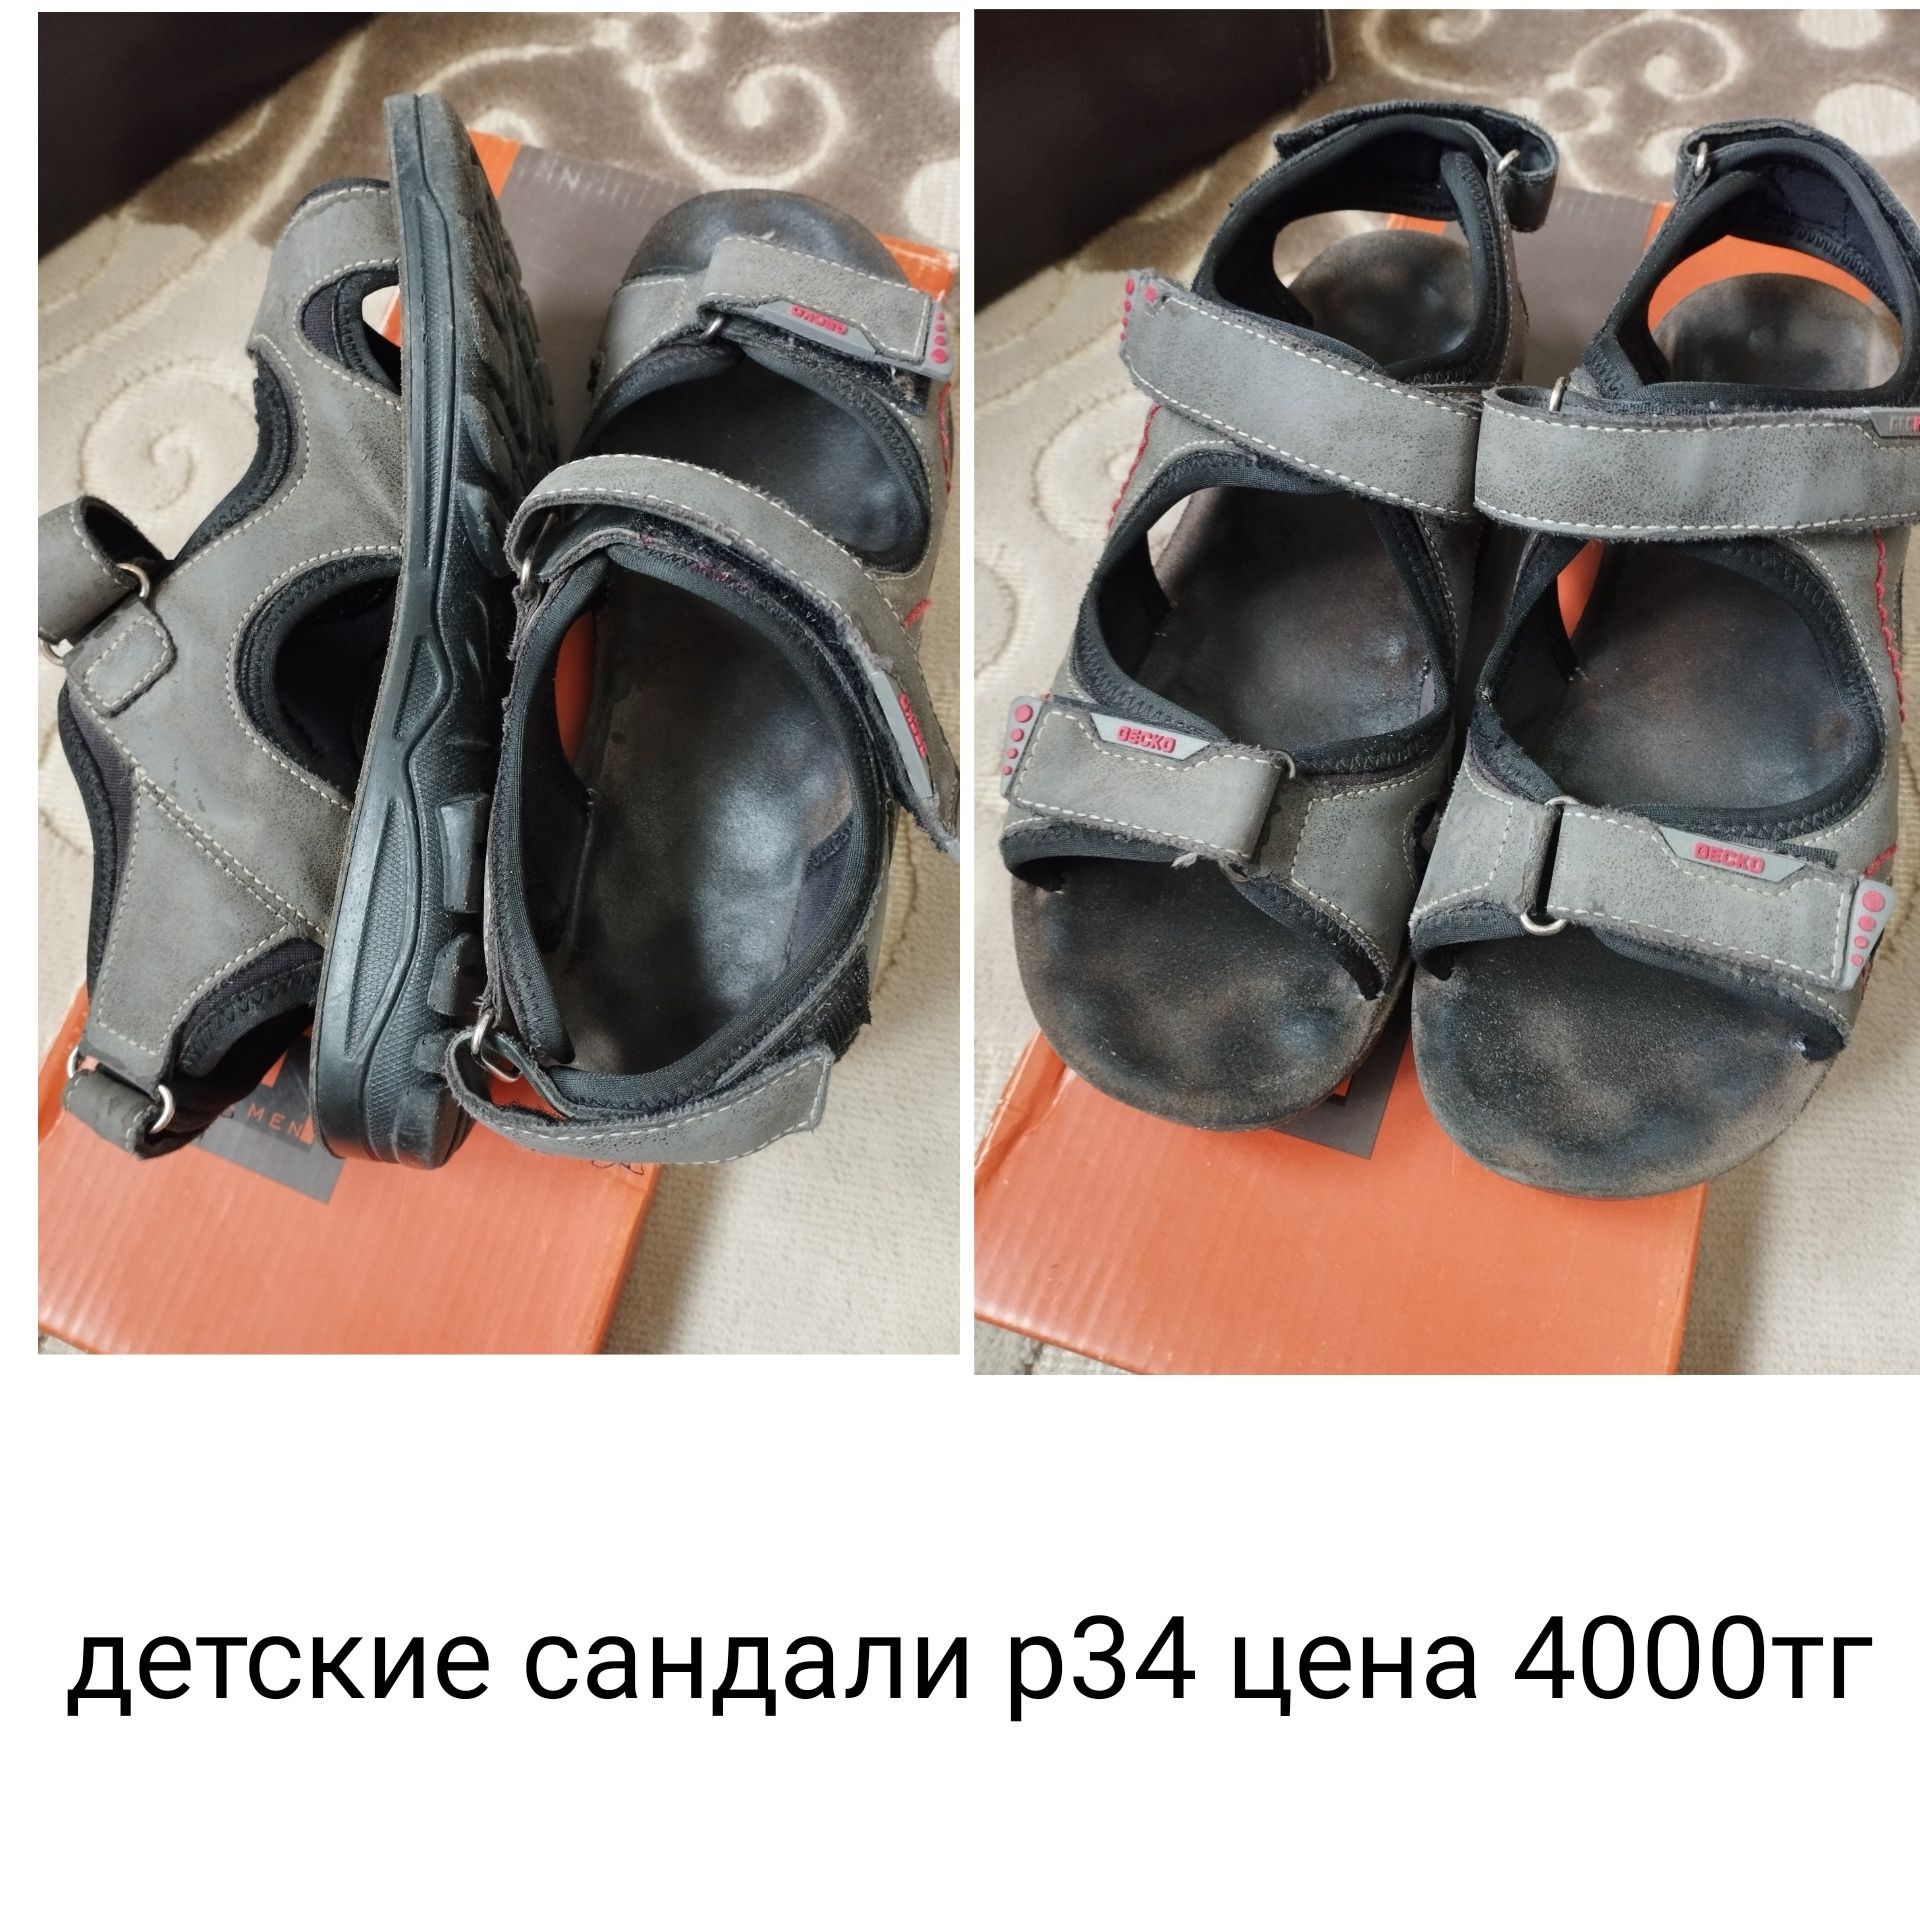 Детские сандали р34